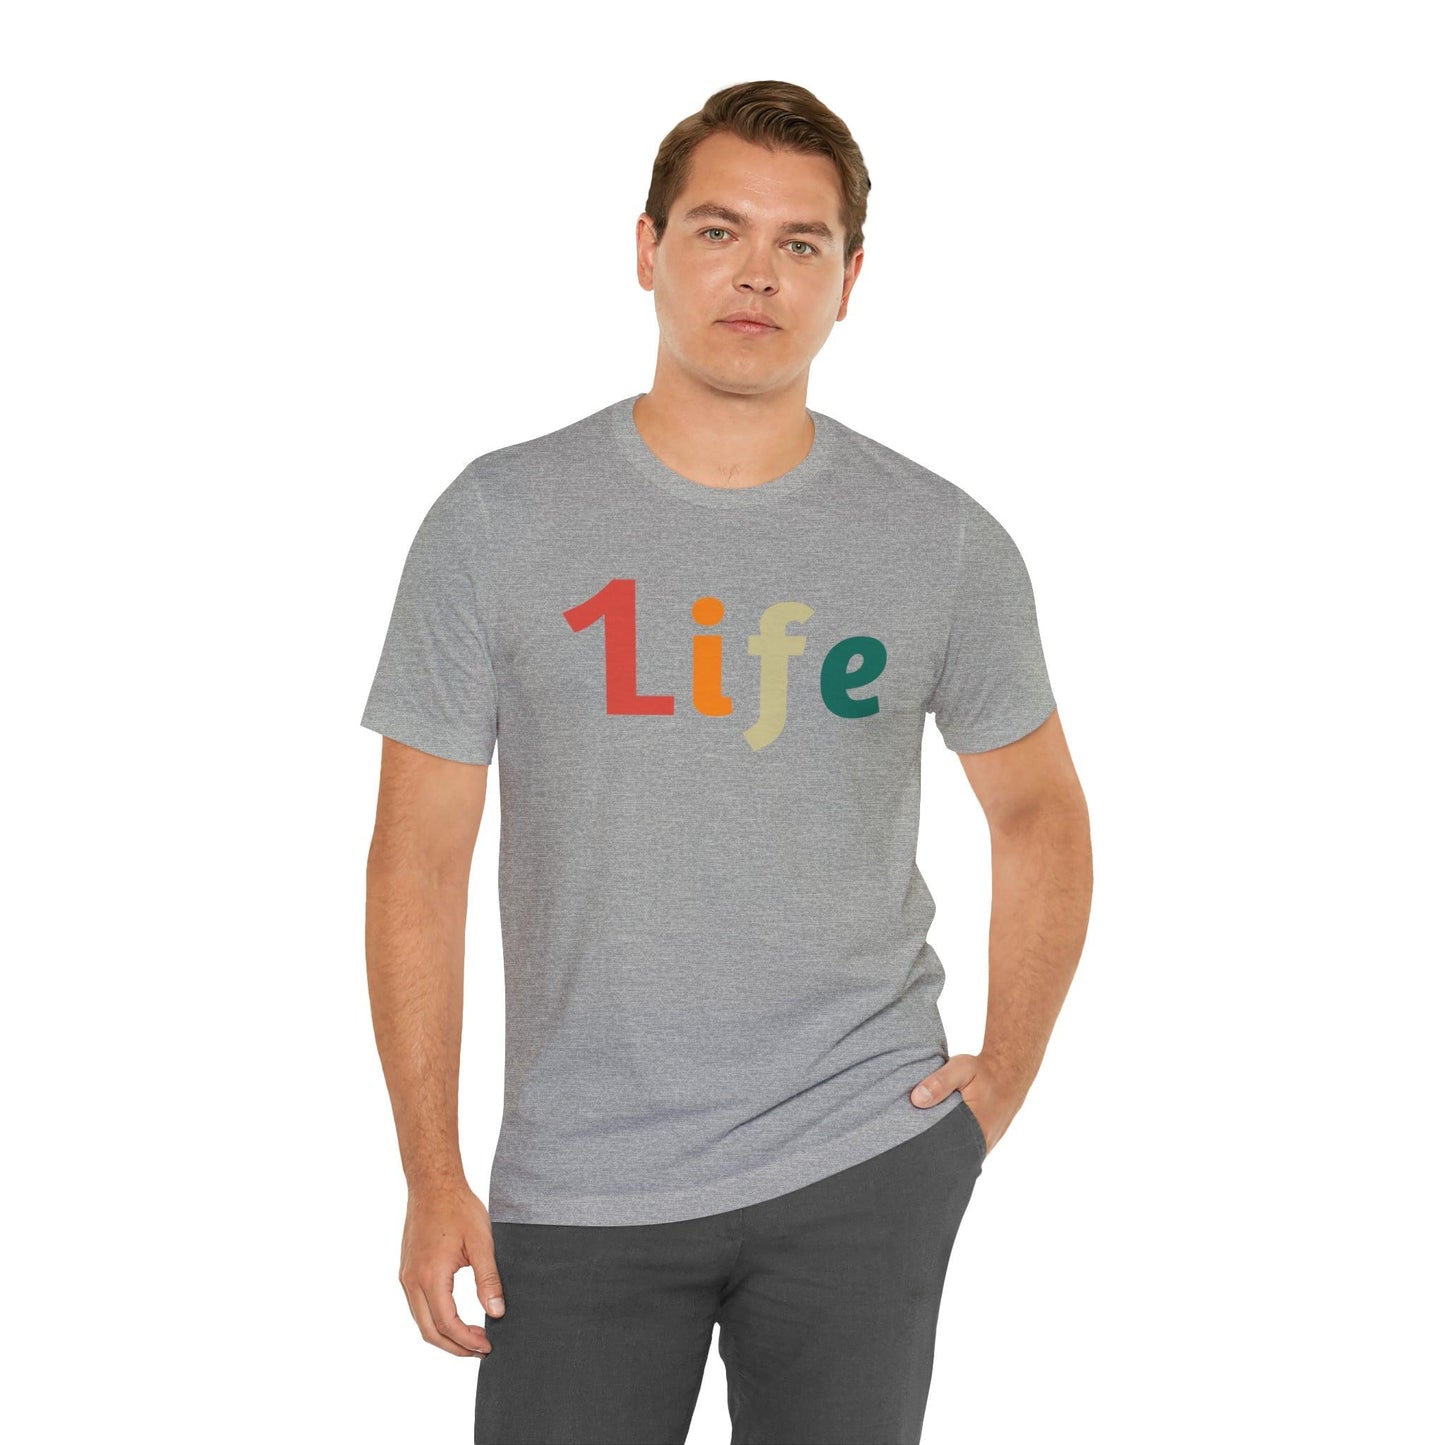 Retro One life Shirt 1life shirt Live Your Life You Only Have One Life To Live Retro Shirt - Giftsmojo